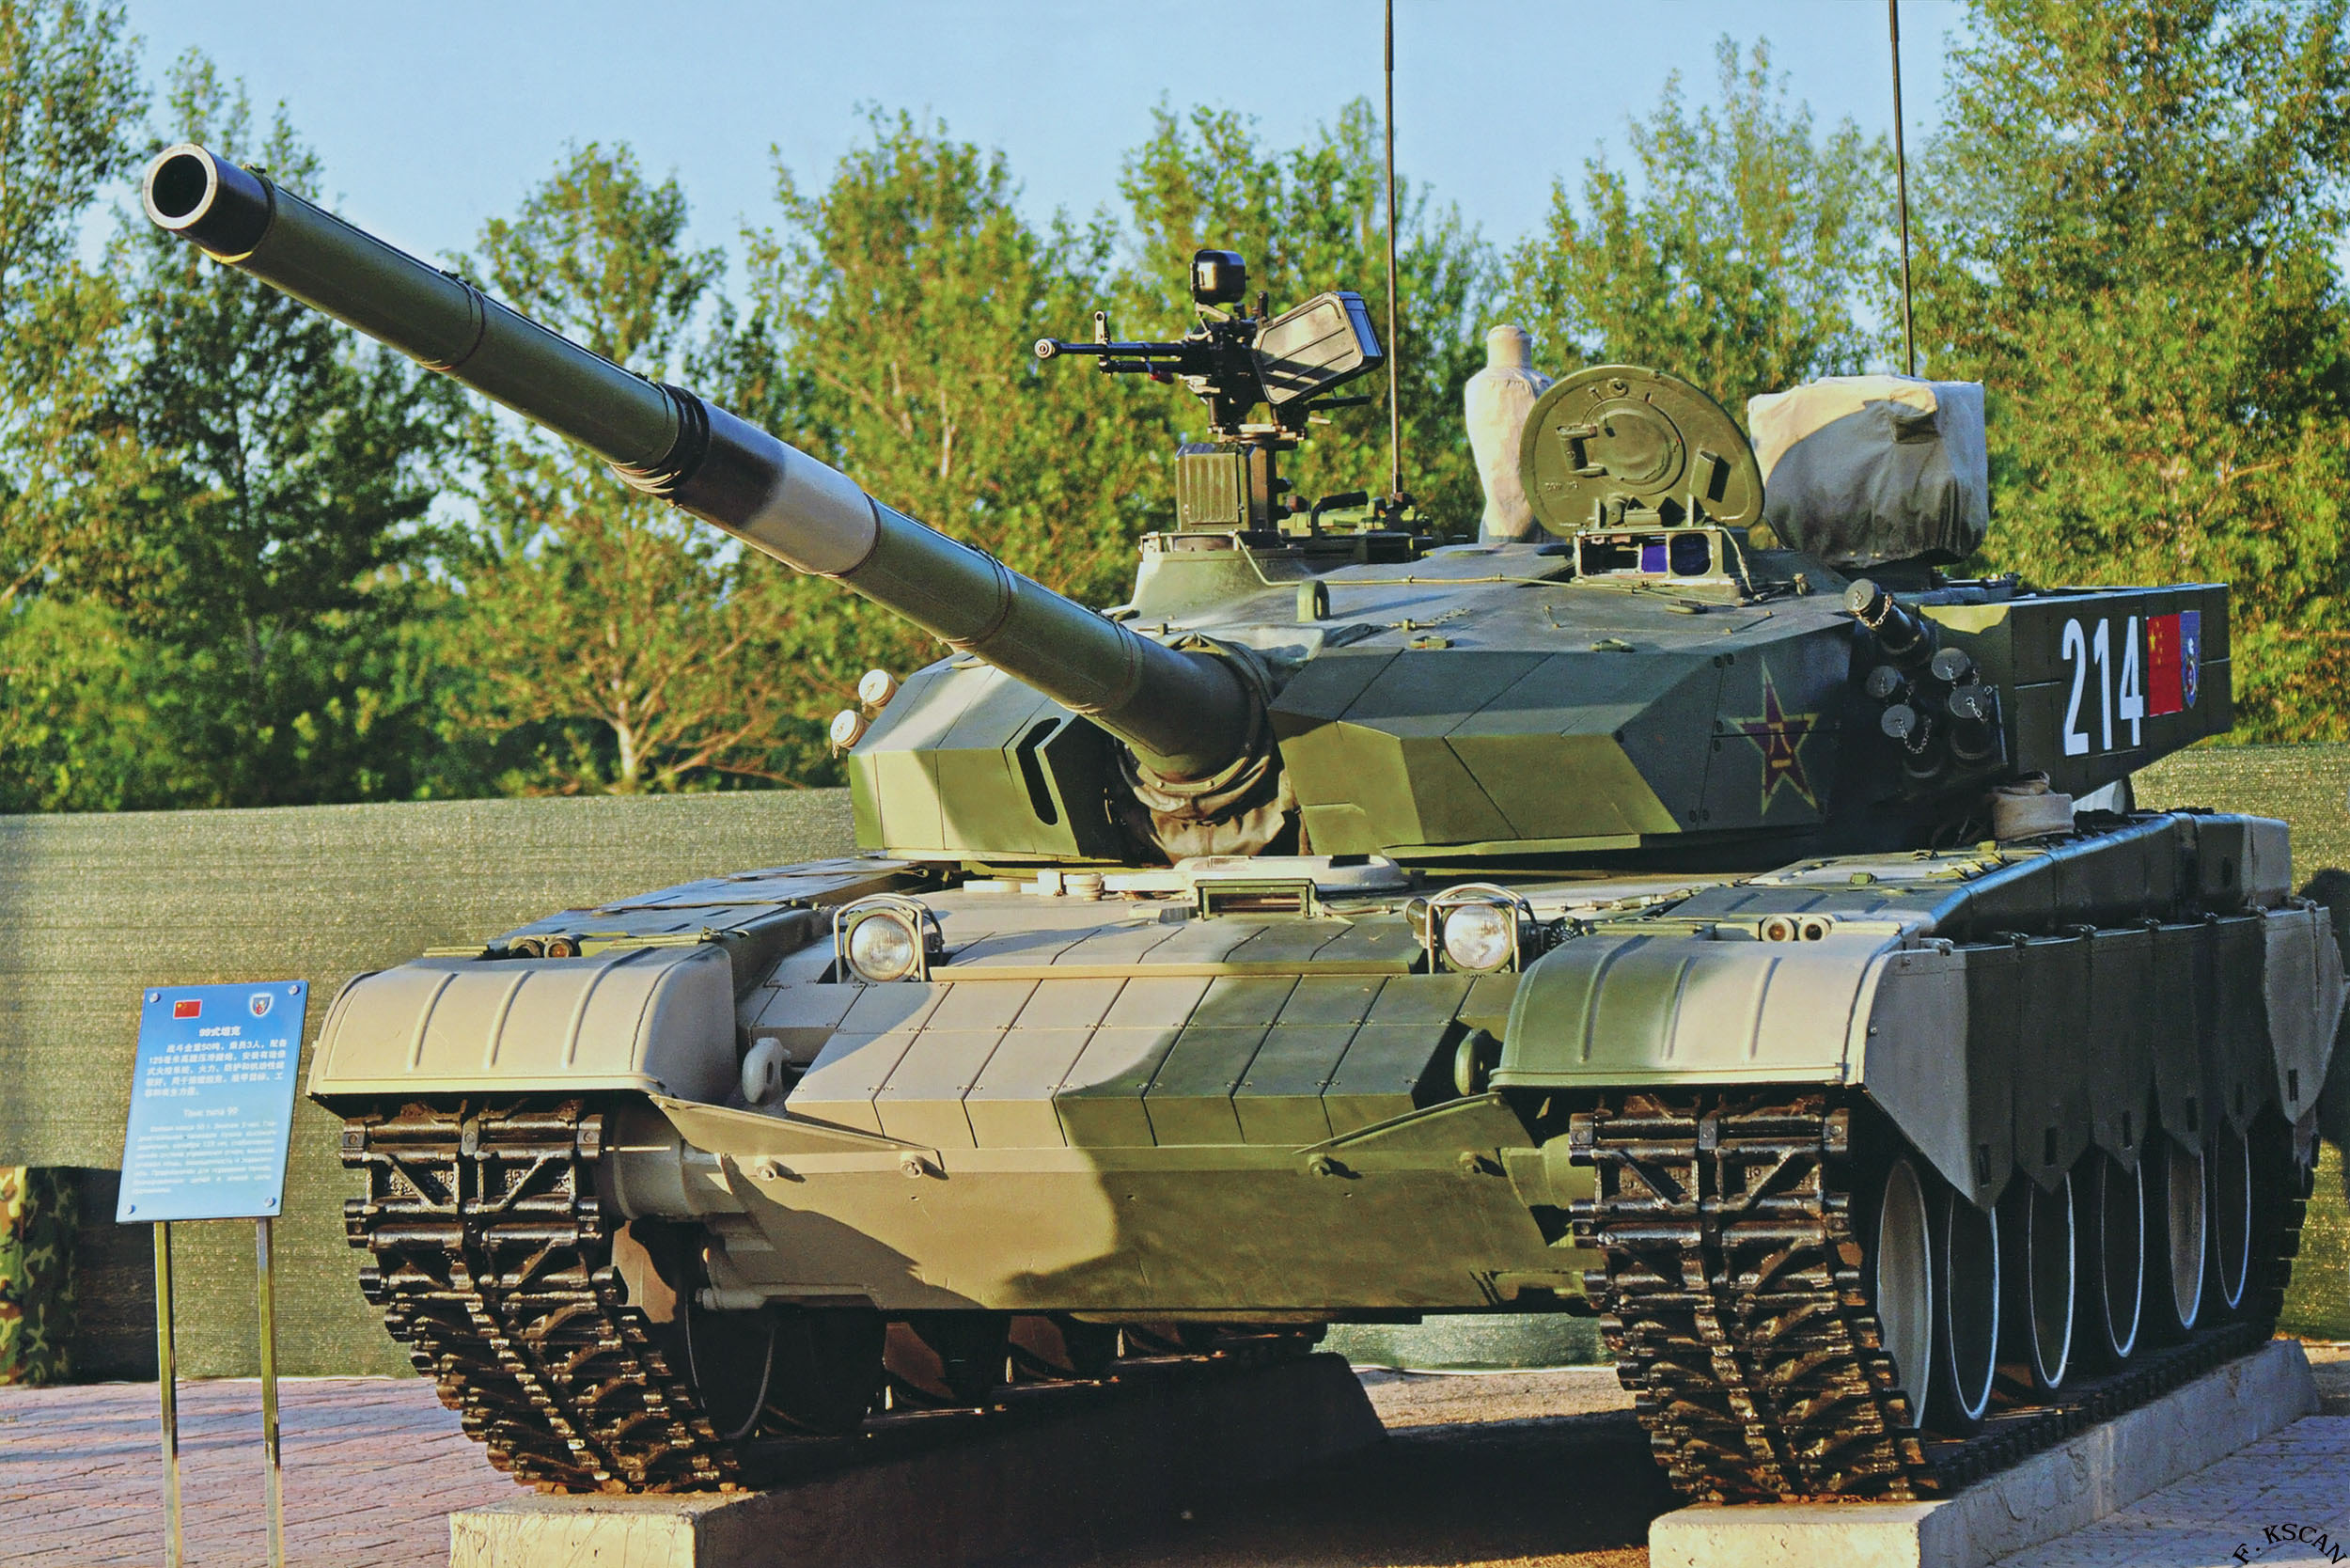 Ztz 99. Танк ZTZ-99a. Type 99 танк. ЗТЗ 99 танк. Китайский танк Type 99.